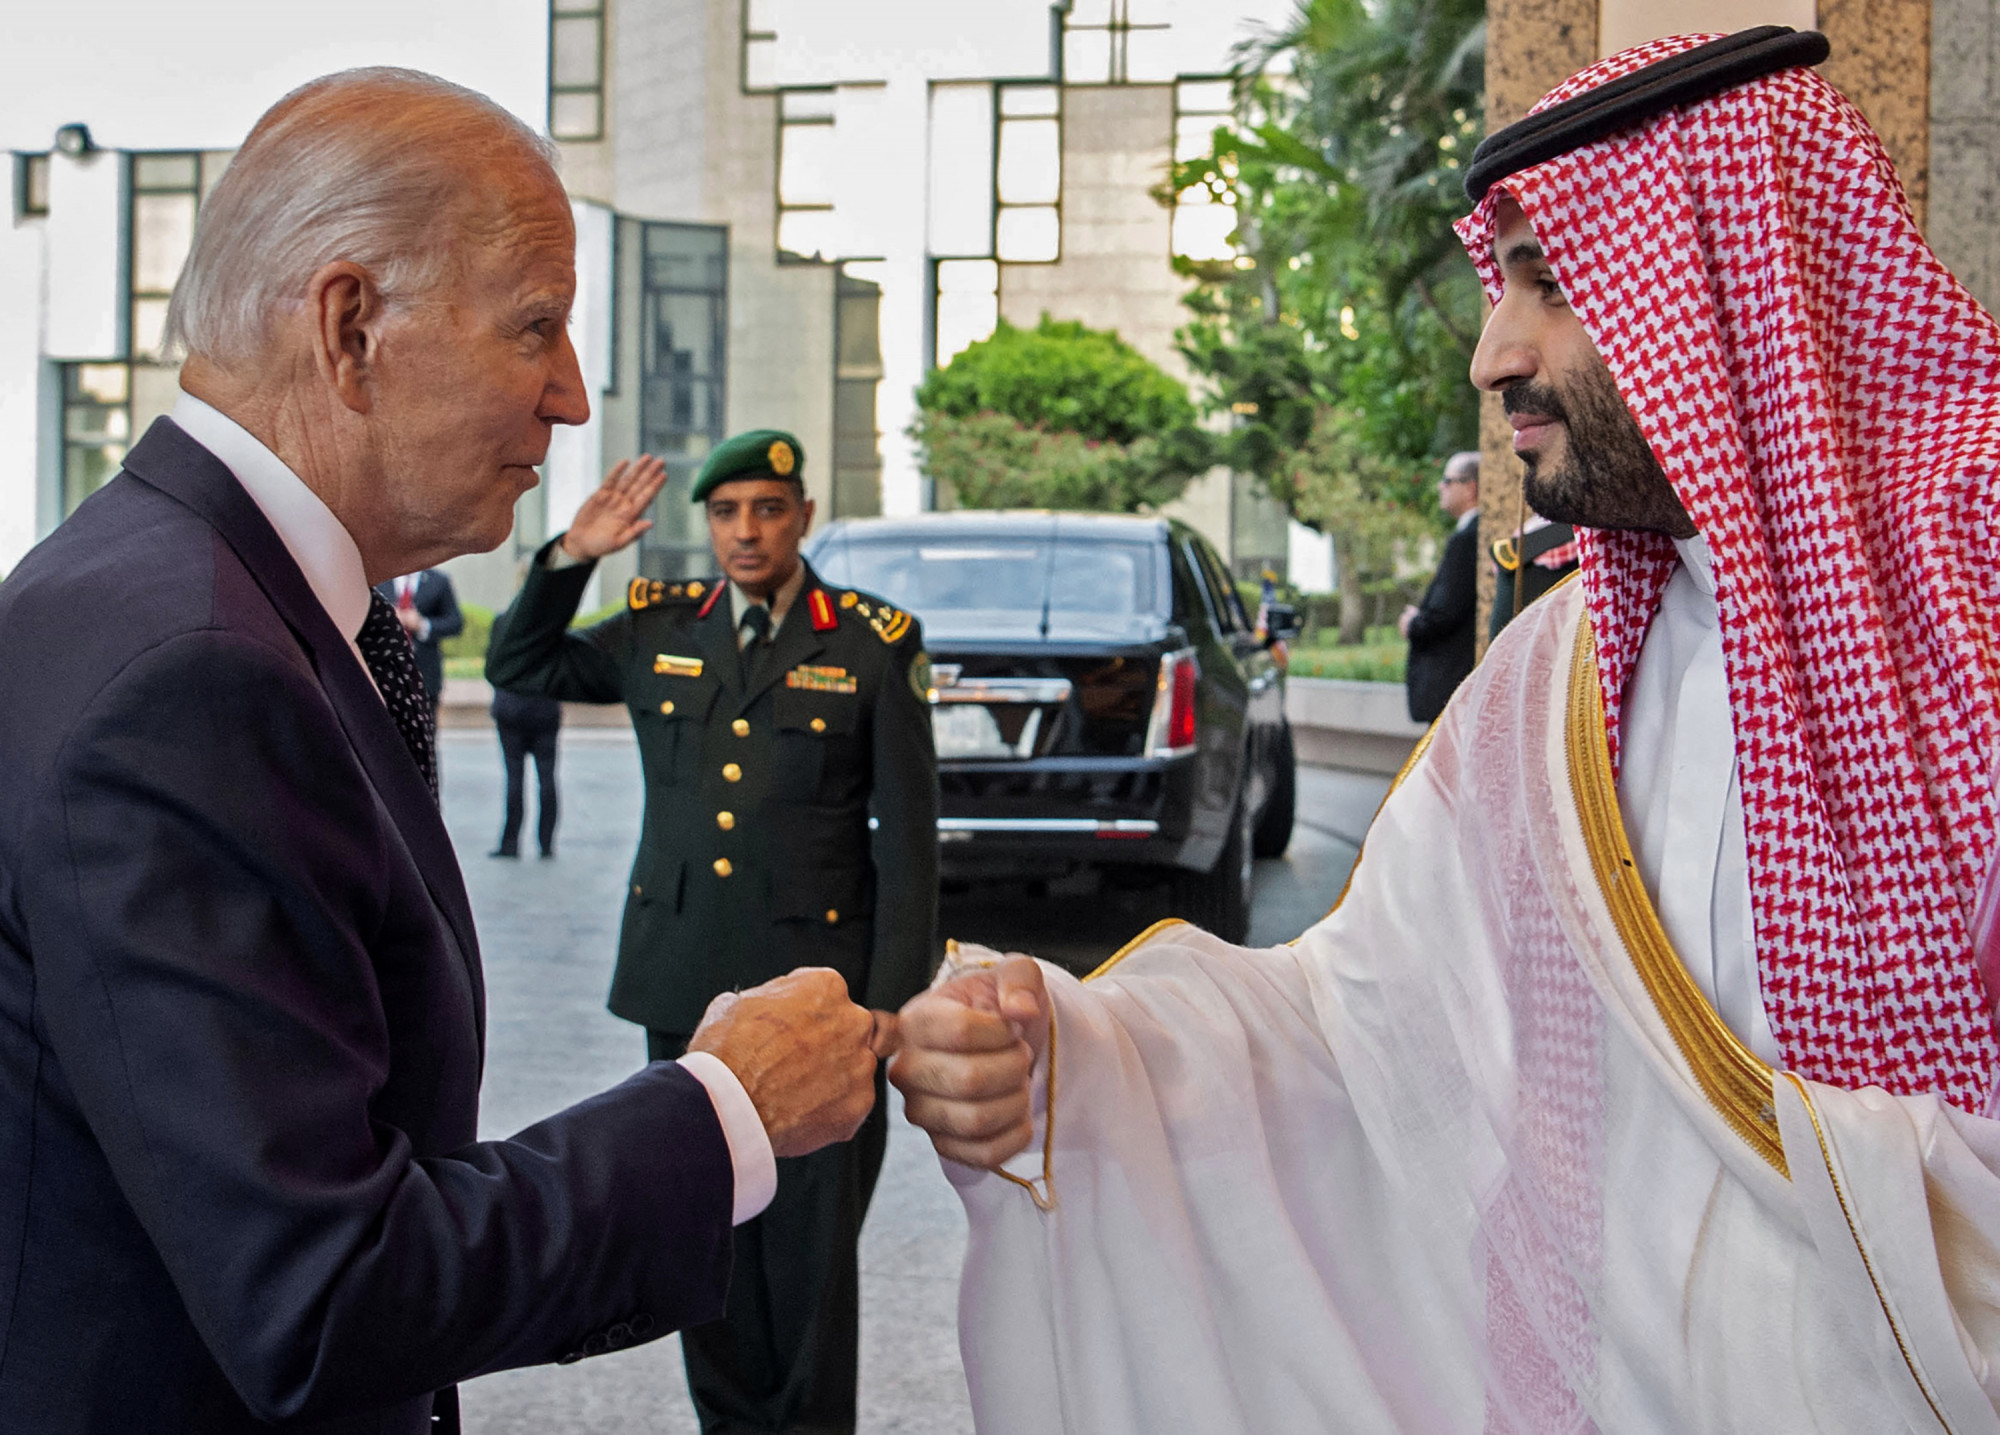 Mentelmi jogot kap a Hasogdzsi-gyilkossággal vádolt szaúdi koronaherceg az Egyesült Államoktól